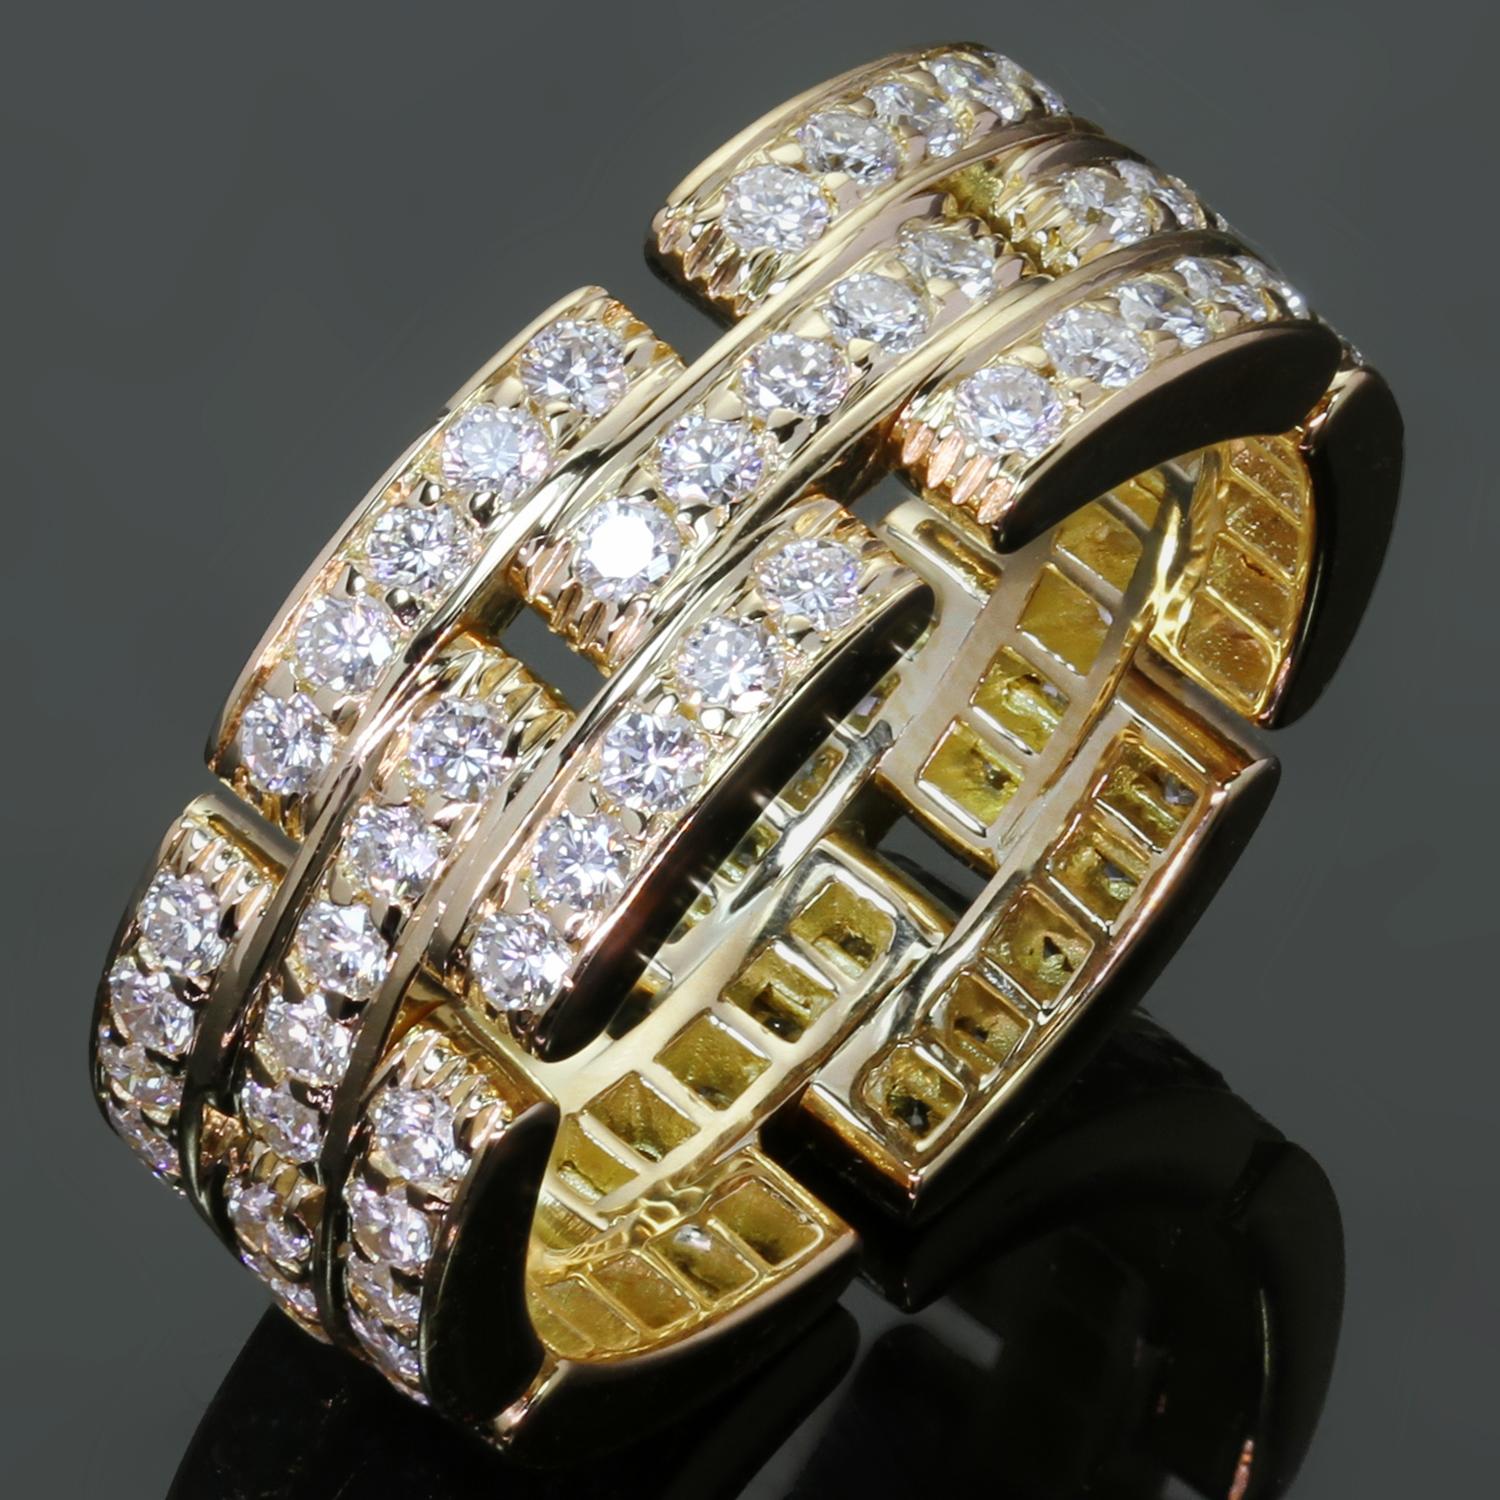 Cet authentique bracelet Cartier de la collection emblématique Maillon Panthere présente 3 rangées de maillons en or jaune 18 carats entièrement sertis de diamants ronds D-E-F VVS1-VVS2 de taille brillant d'une valeur estimée à 1,40 carats. Fabriqué